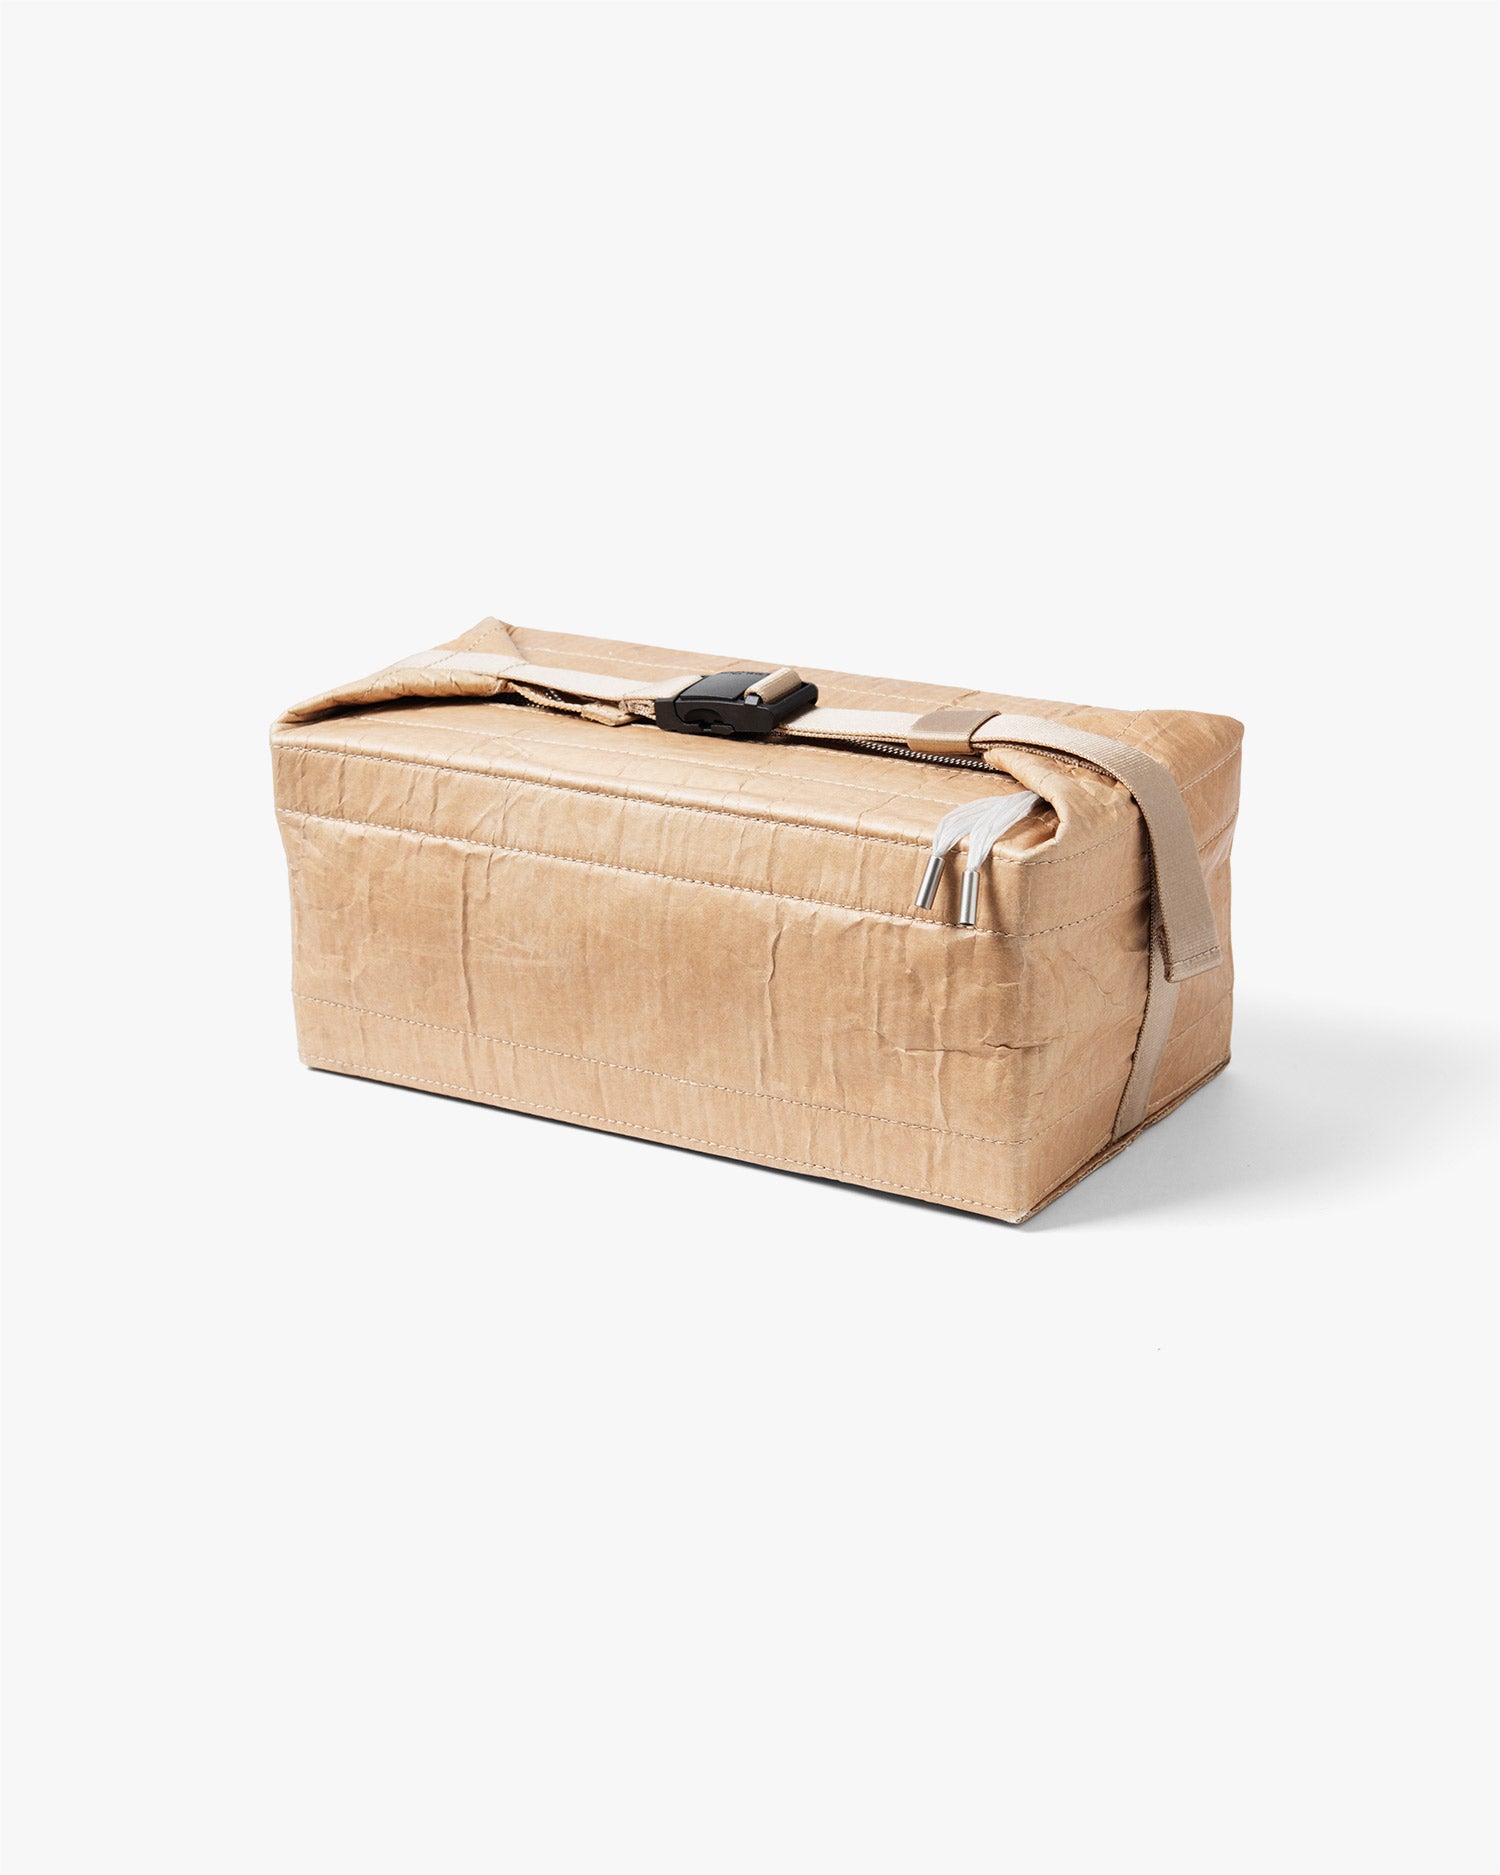 Carton Box Bag